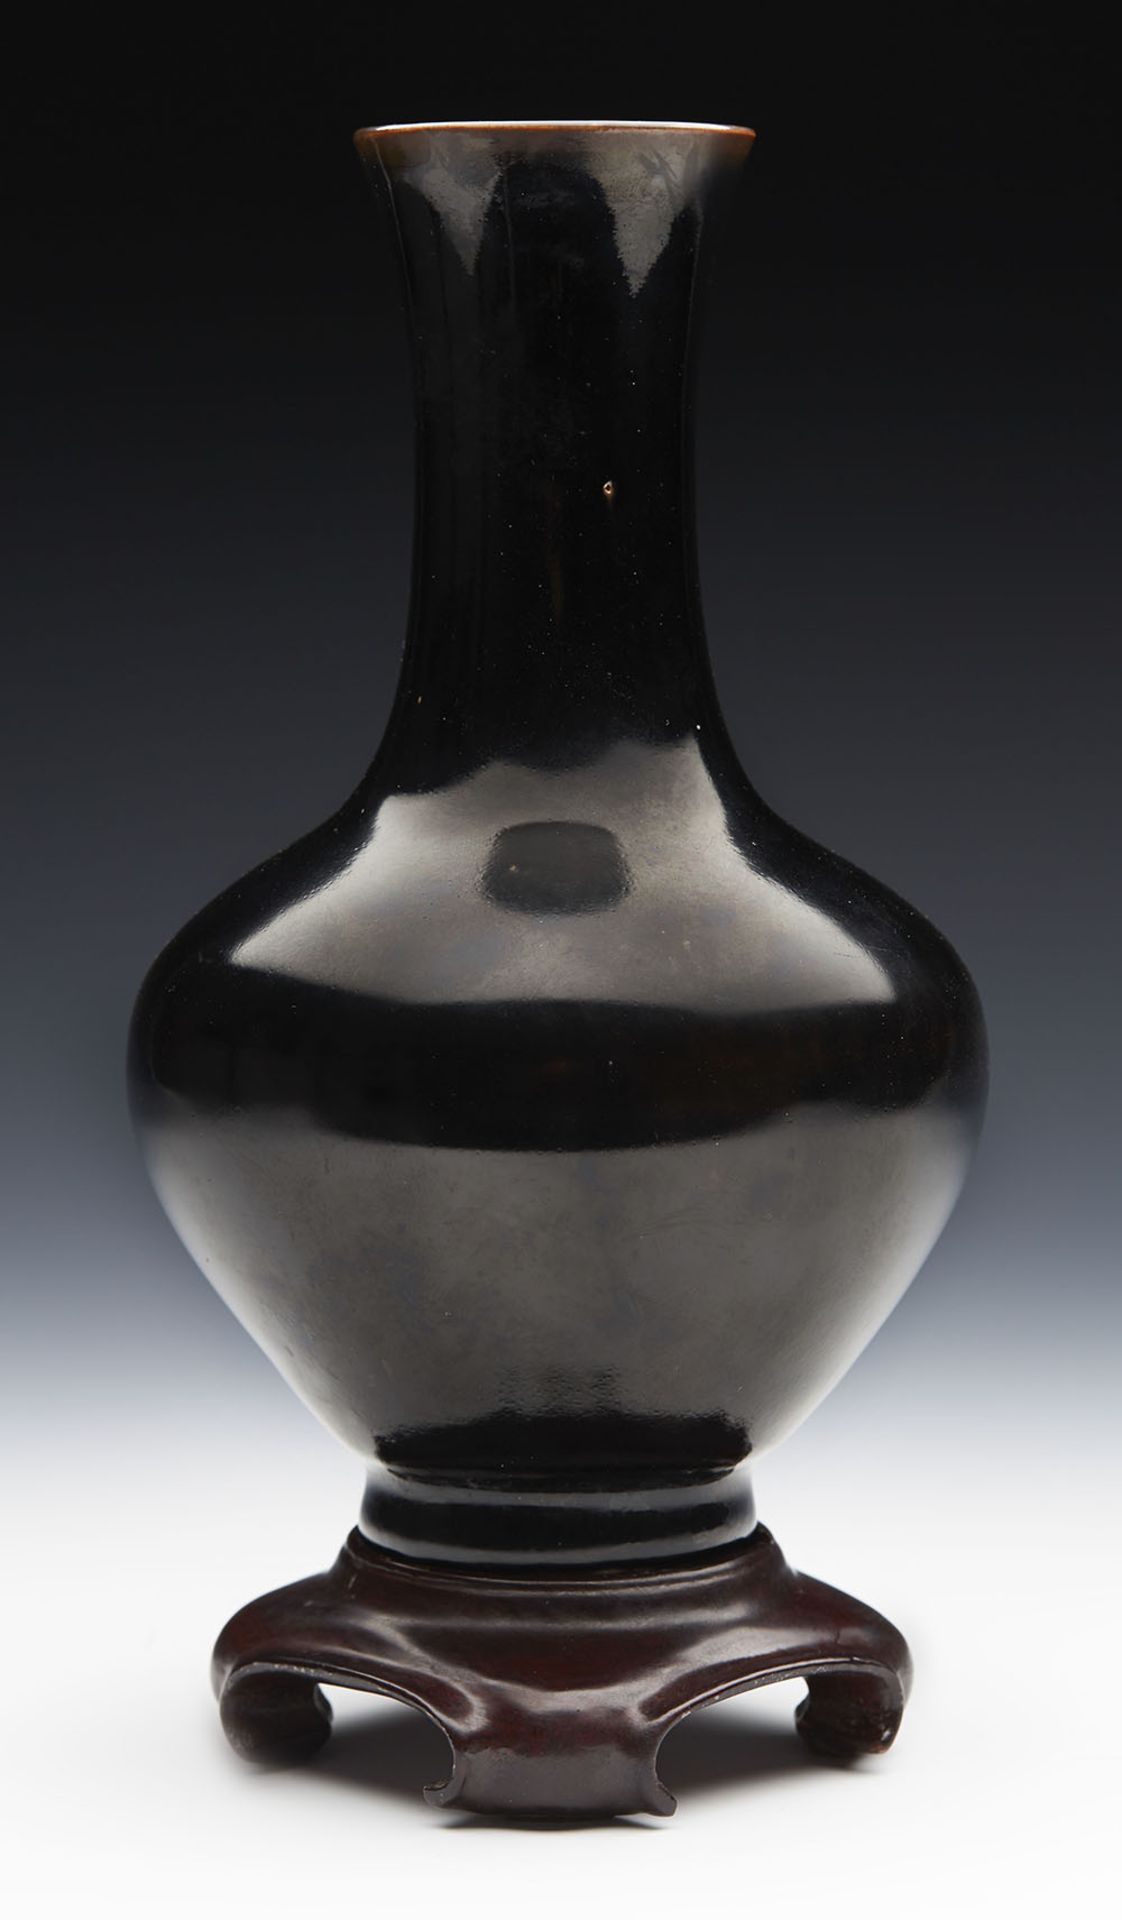 Antique Chinese Kangxi Brown/Black Glazed Bottle Vase 1662-1722 - Image 3 of 8